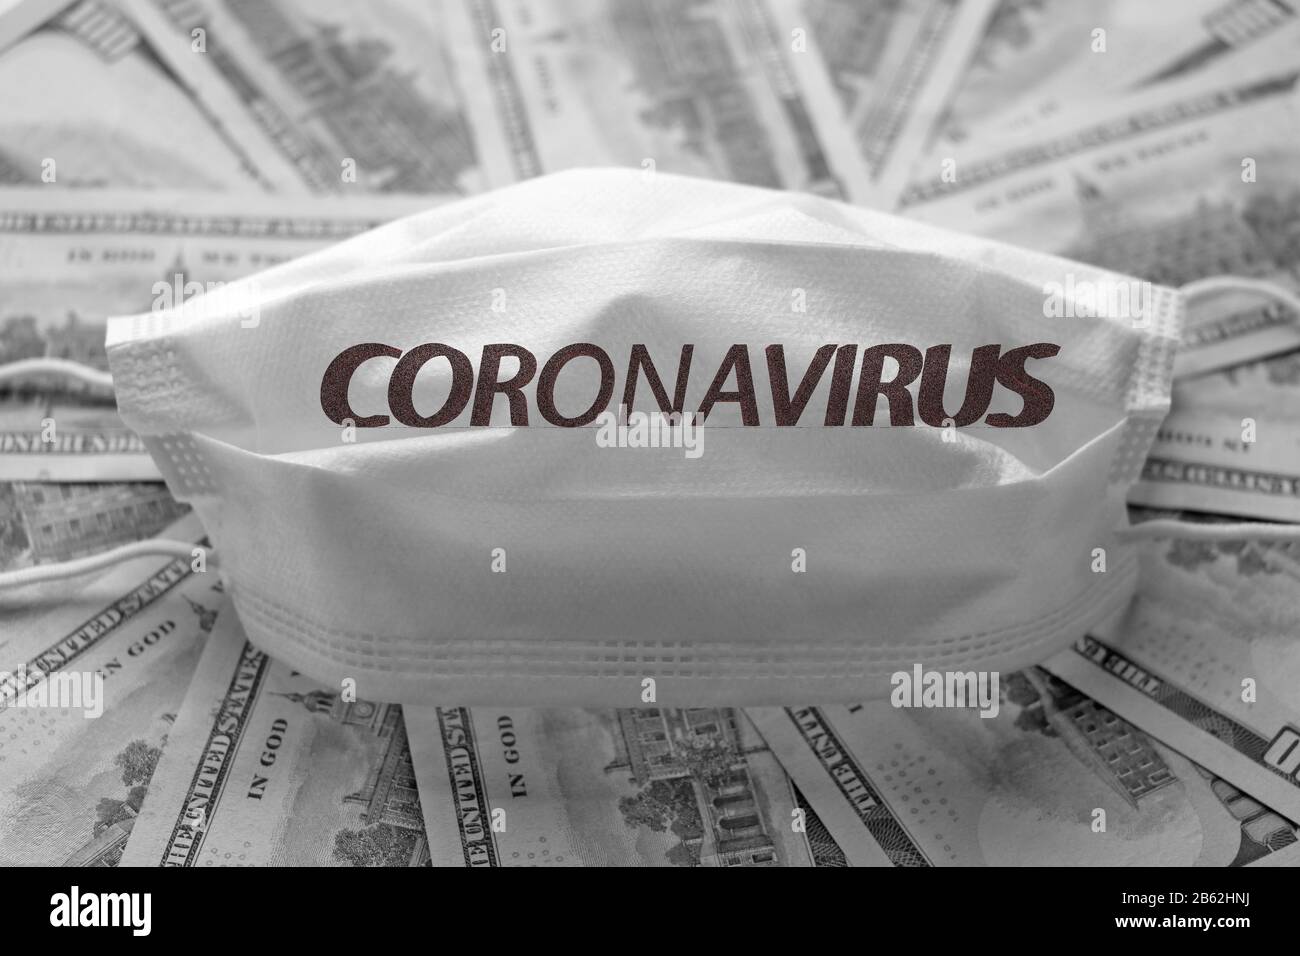 Novel coronavirus - 2019-nCoV. The inscription medical protective masks Coronavirus. Chinese coronavirus outbreak Stock Photo